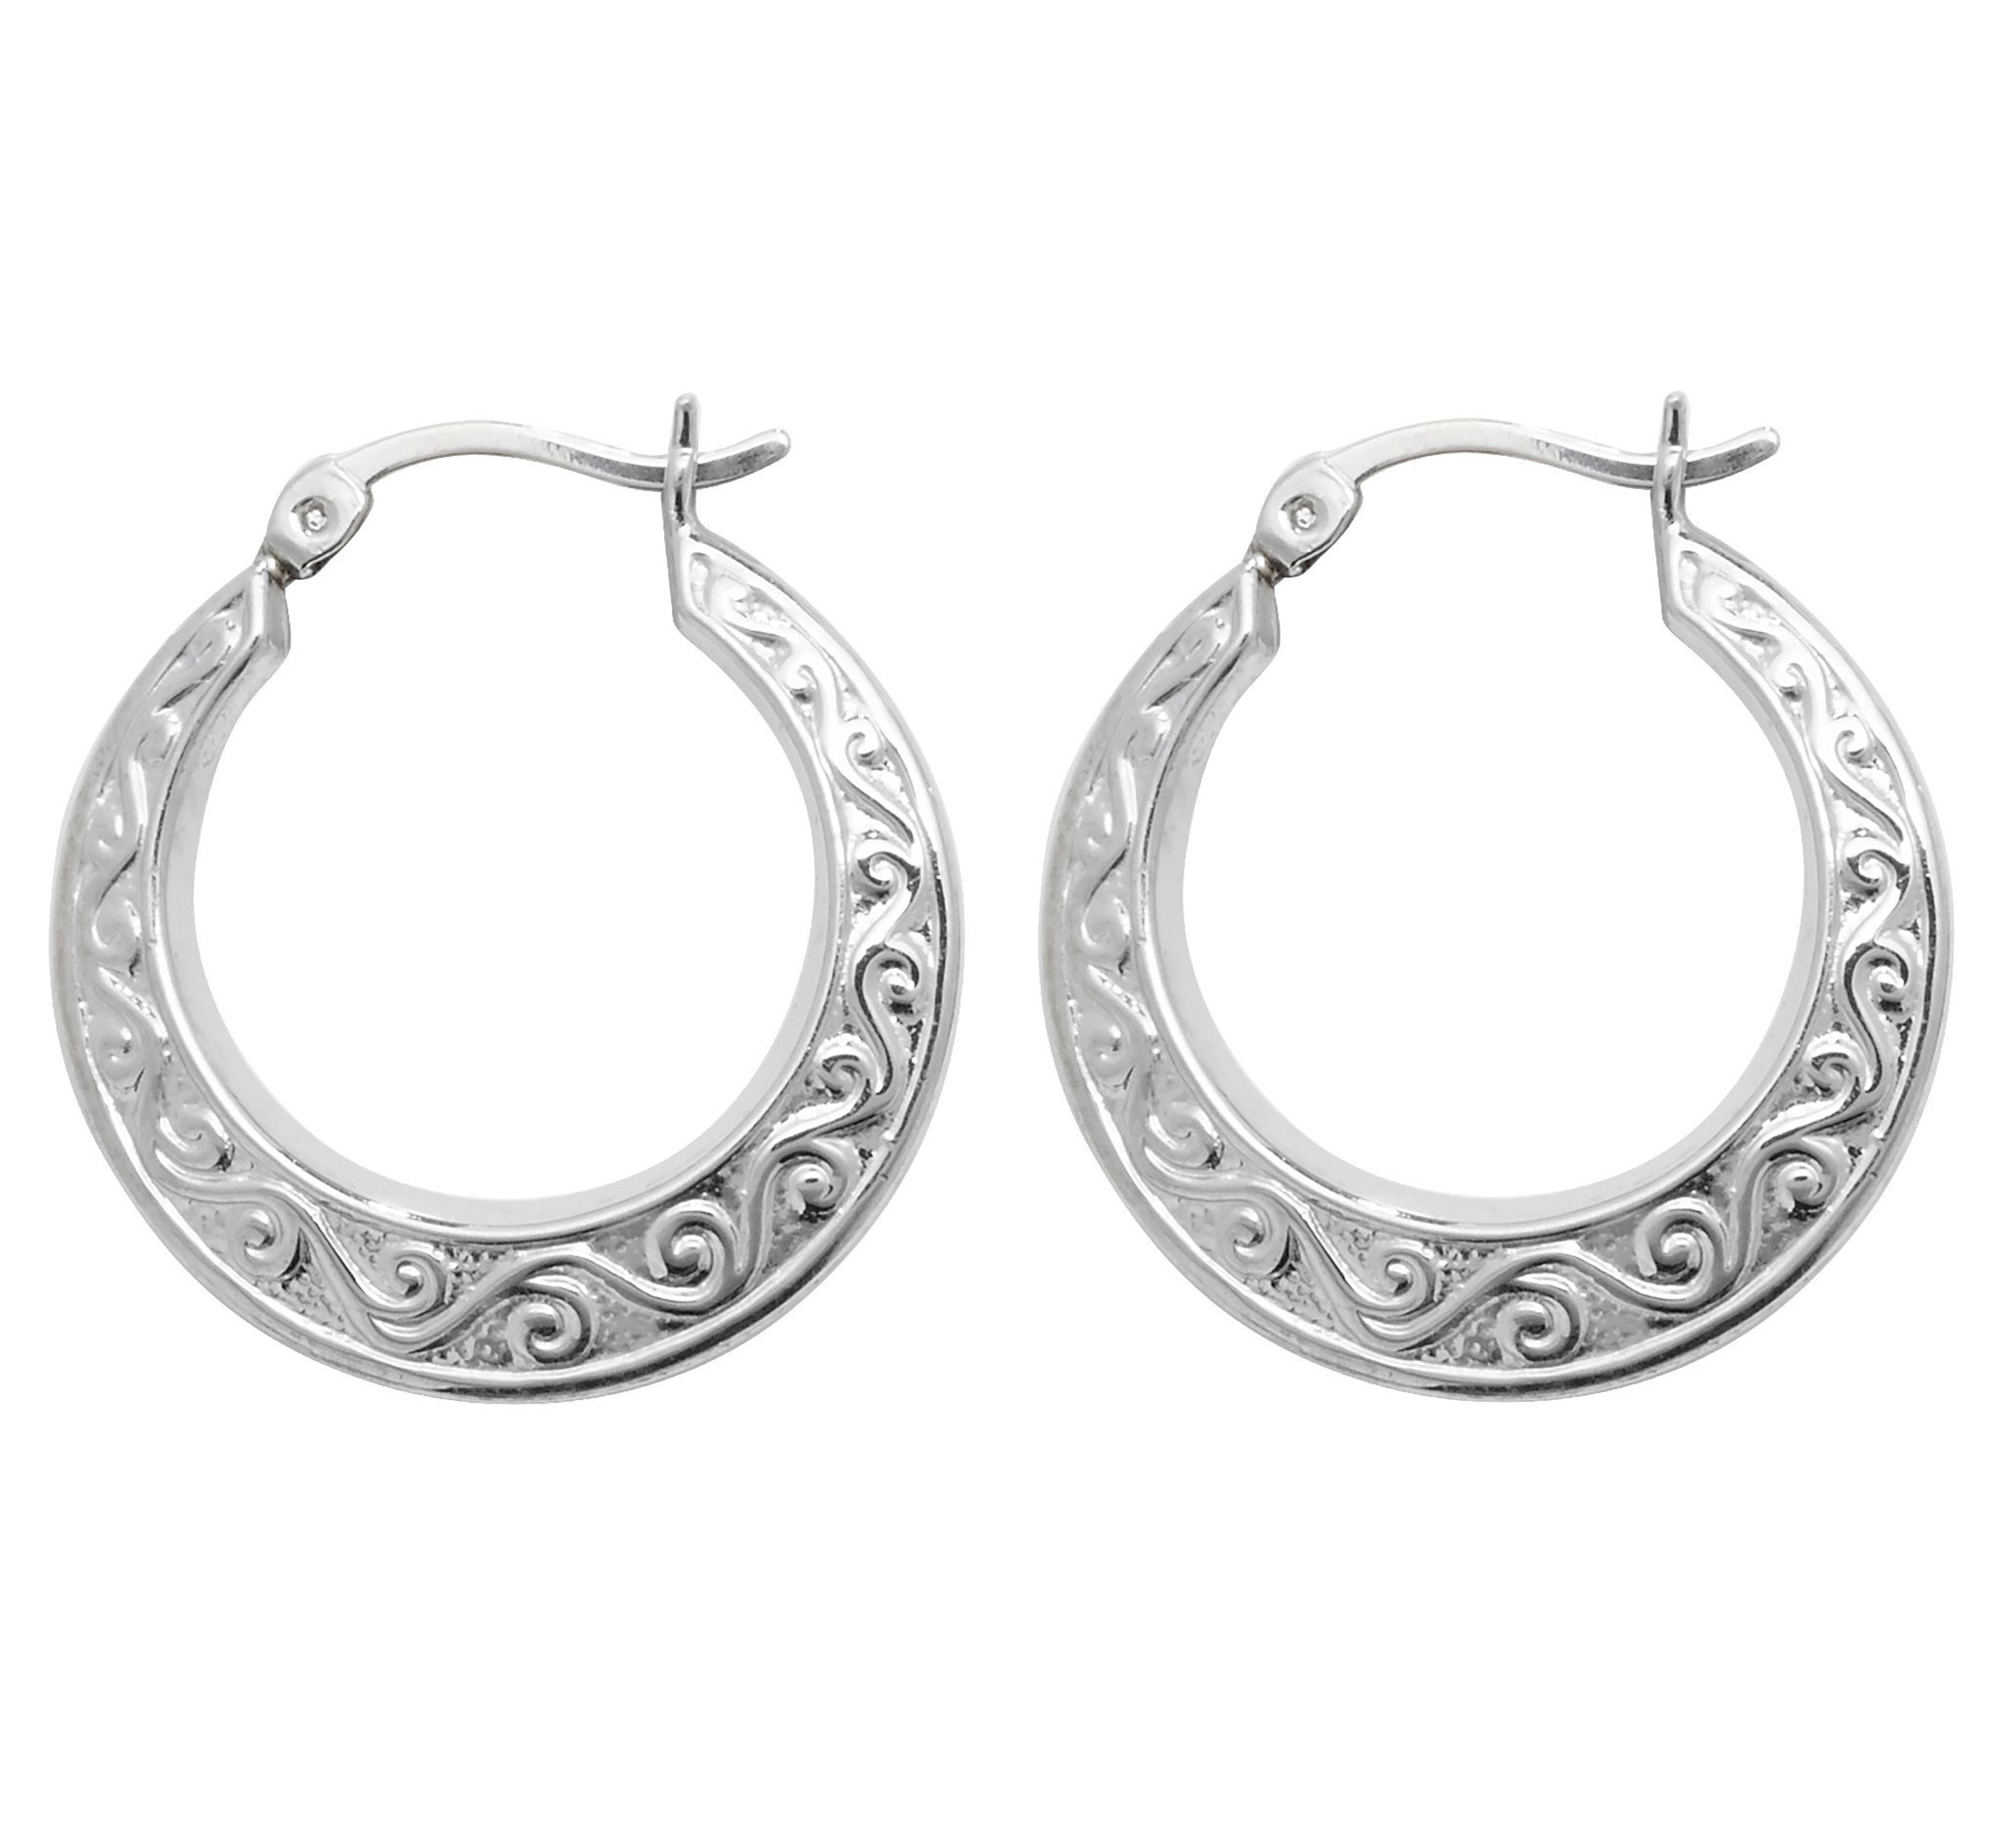 Pair of Sterling Silver Embossed Scroll Design Hollow Creole 20mm Hoop Earrings